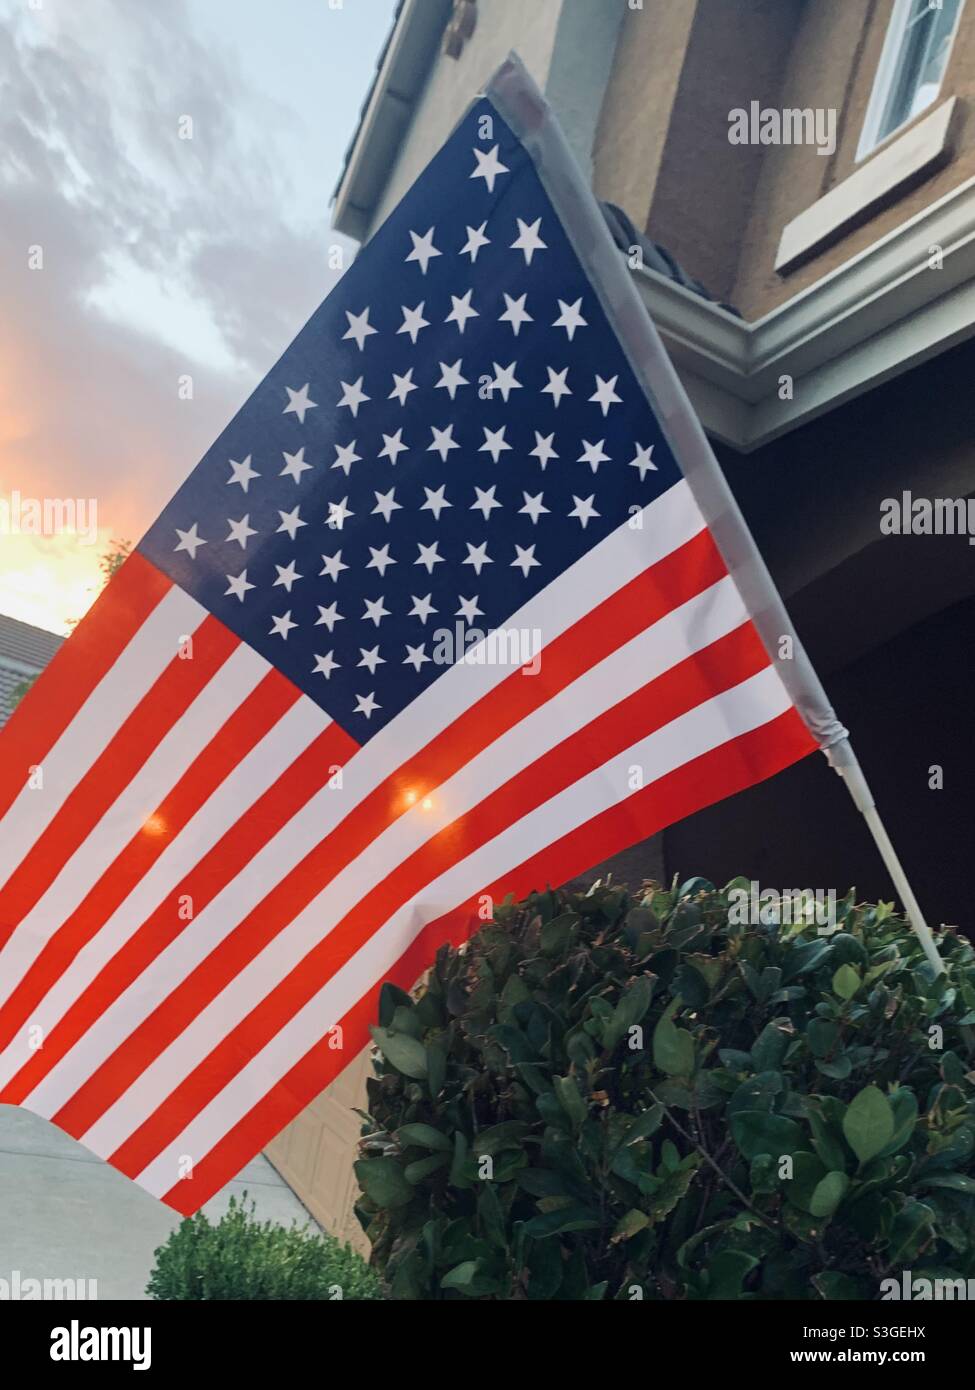 American Celebrating Independence Day le 4 juillet Etats-Unis l'Amérique étoiles et rayures pour toujours Banque D'Images